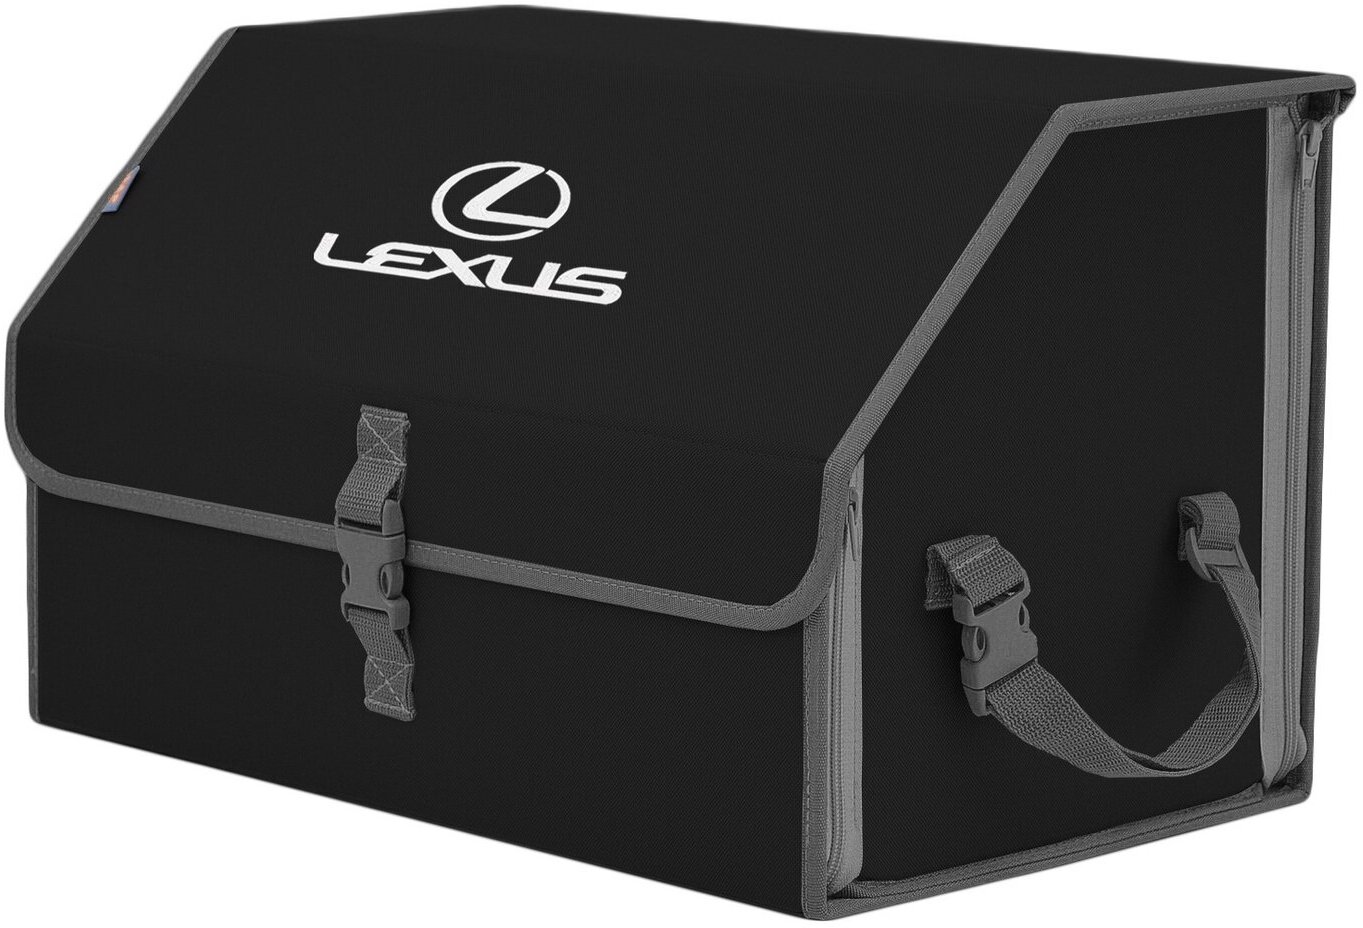 Органайзер-саквояж в багажник "Союз" (размер L). Цвет: черный с серой окантовкой и вышивкой Lexus (Лексус).